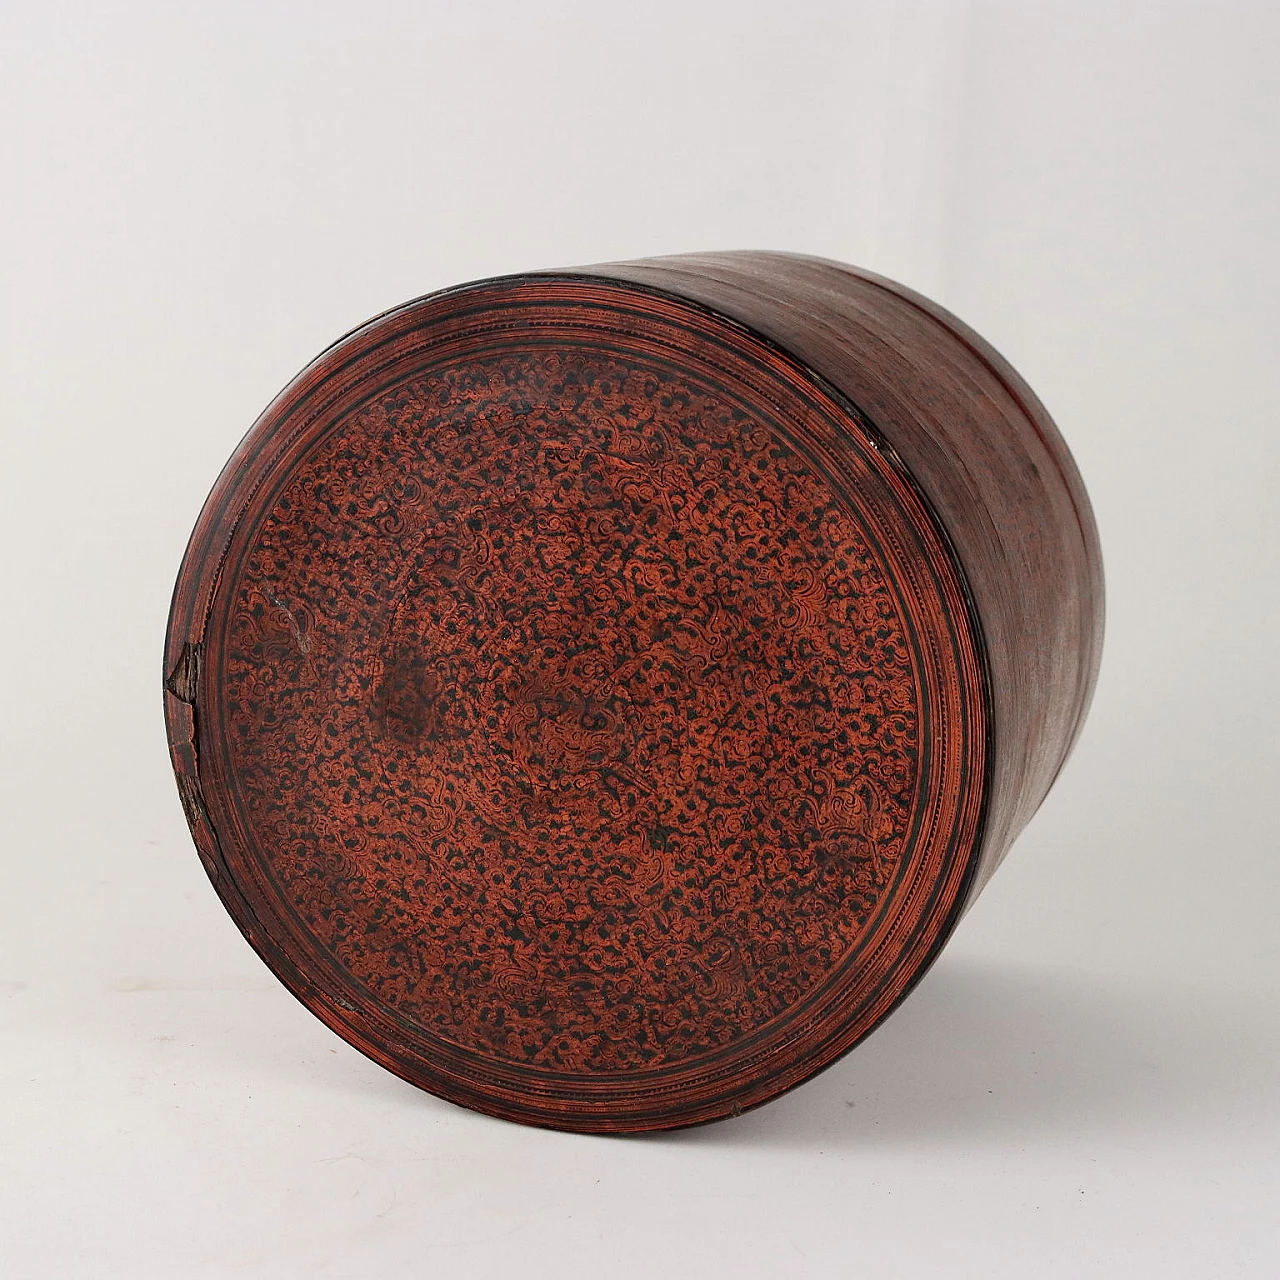 Scatola cilindrica in legno laccato porta betel, '800 10